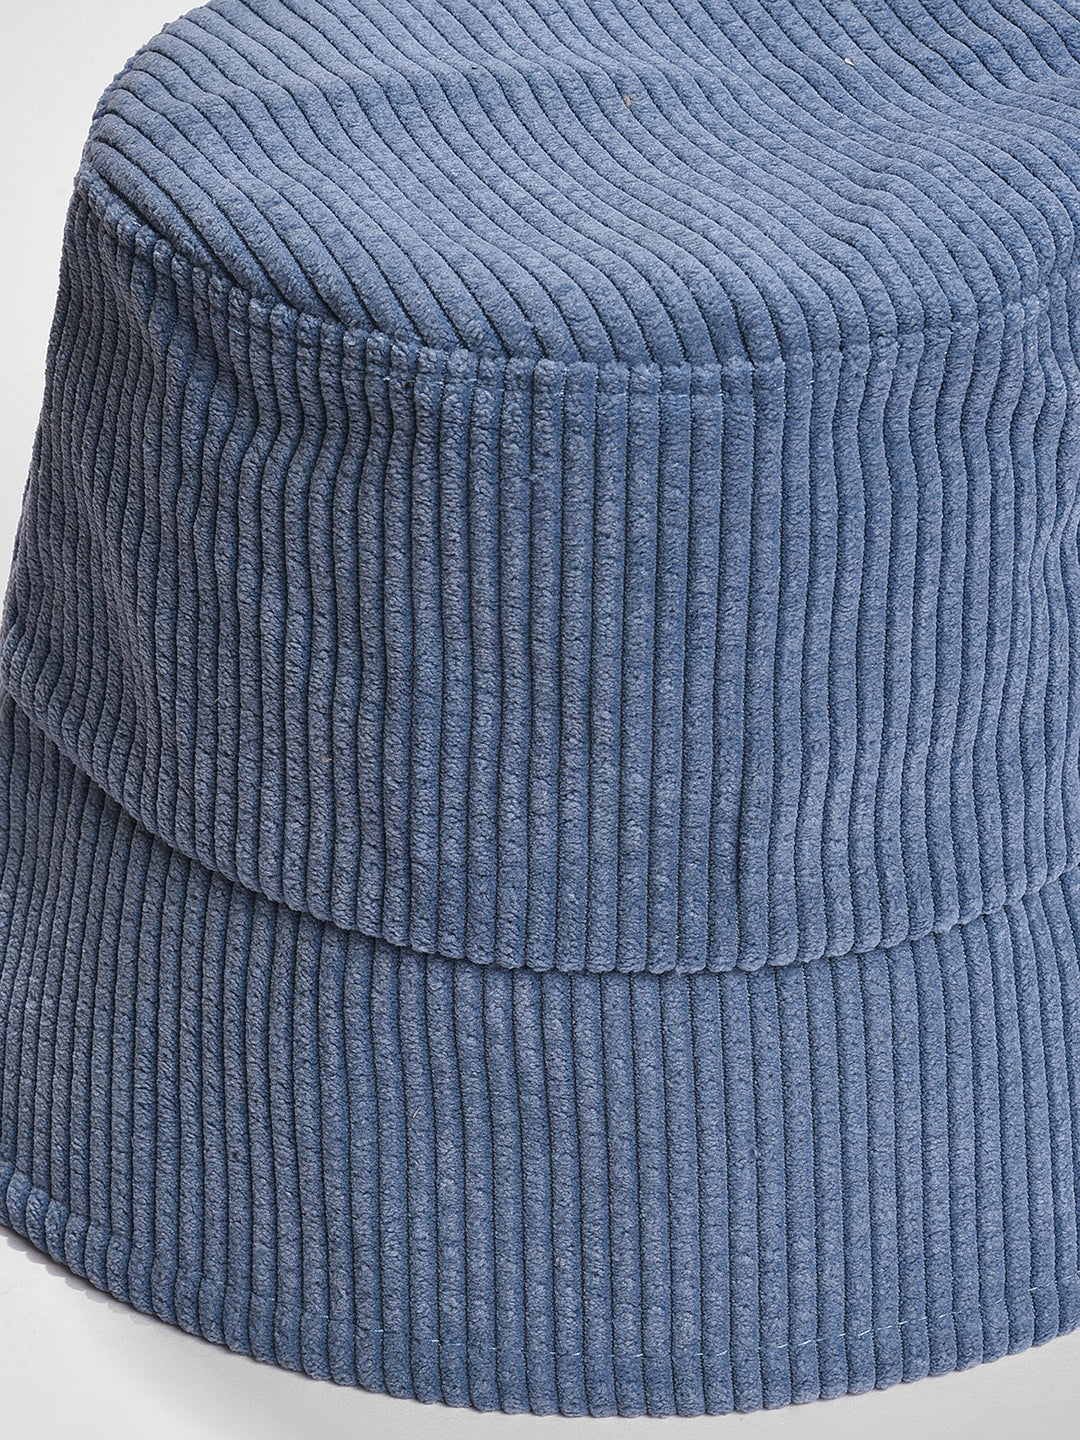 WOMEN BLUE STRIPED BUCKET HAT